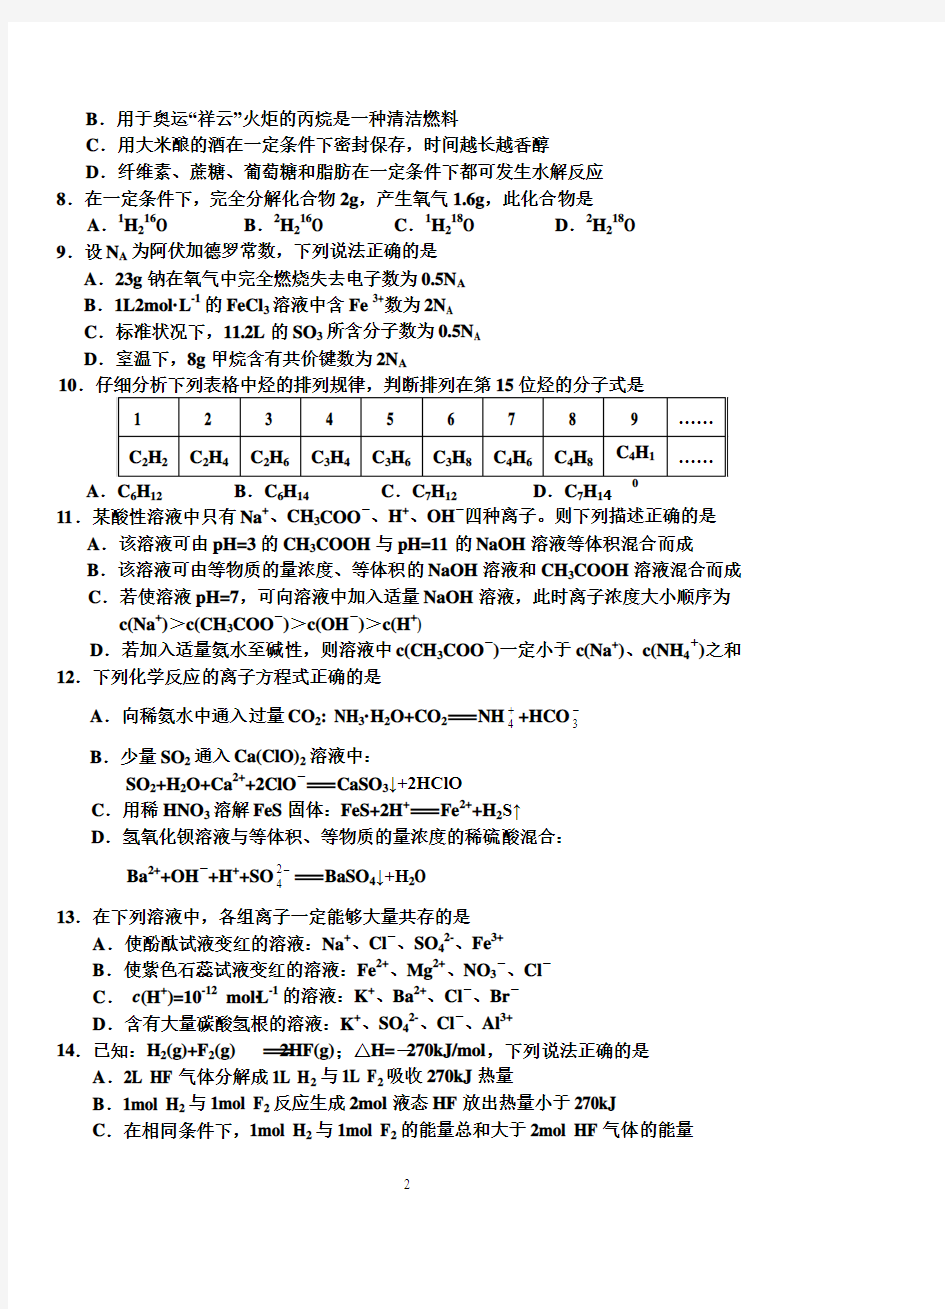 2009年黑龙江省高中化学竞赛初赛试题及答案(精美word版)